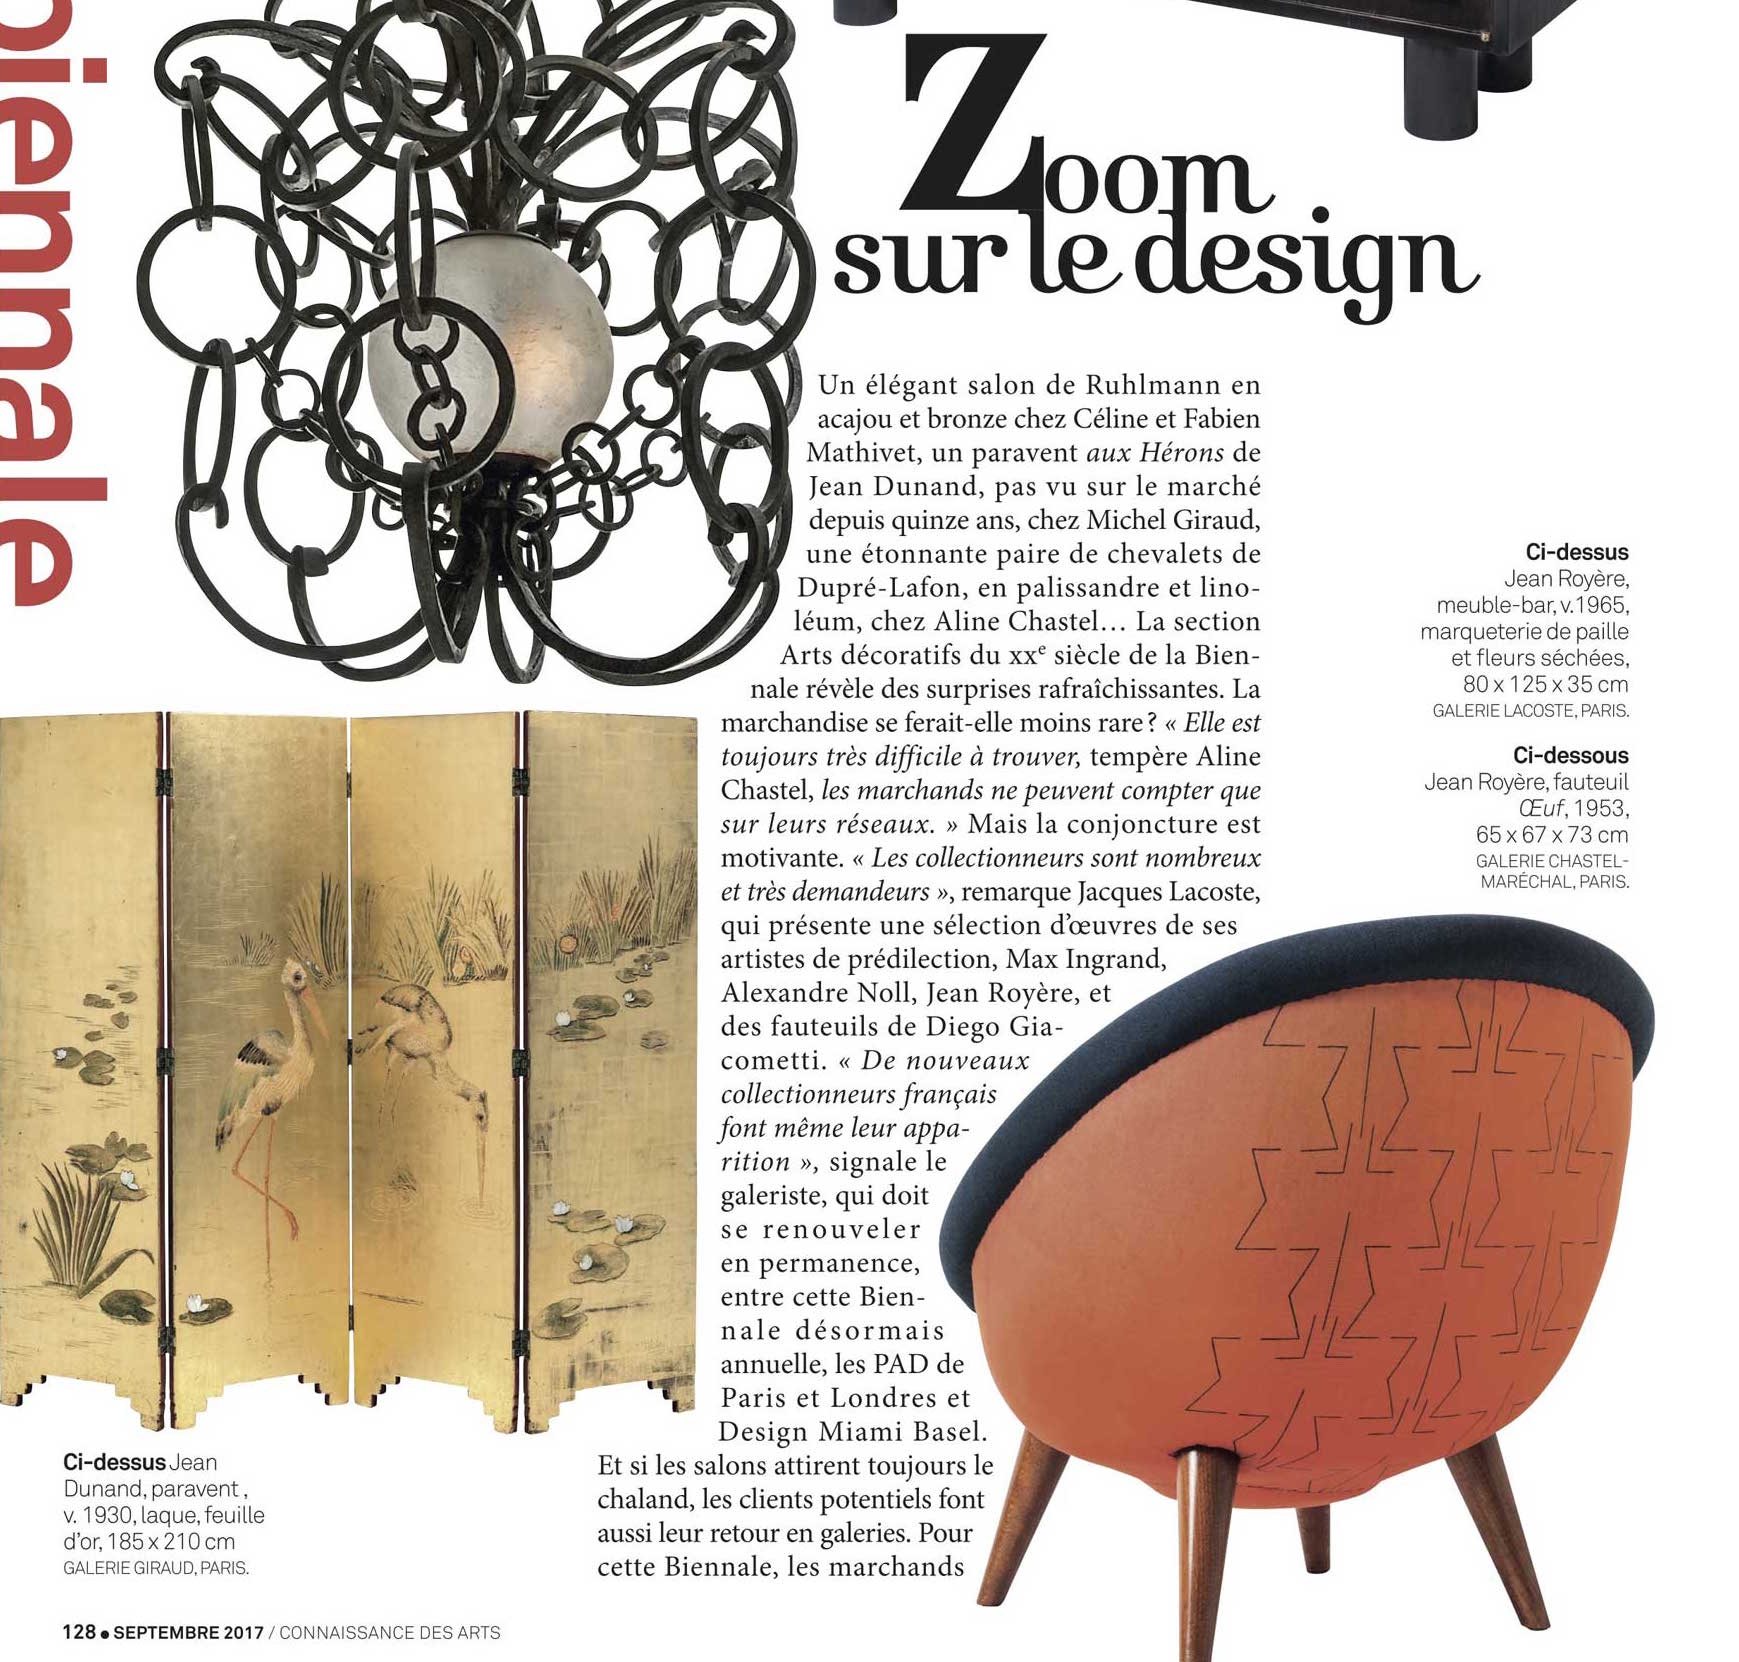 Connaissance des arts – Zoom sur le Design – French magazine